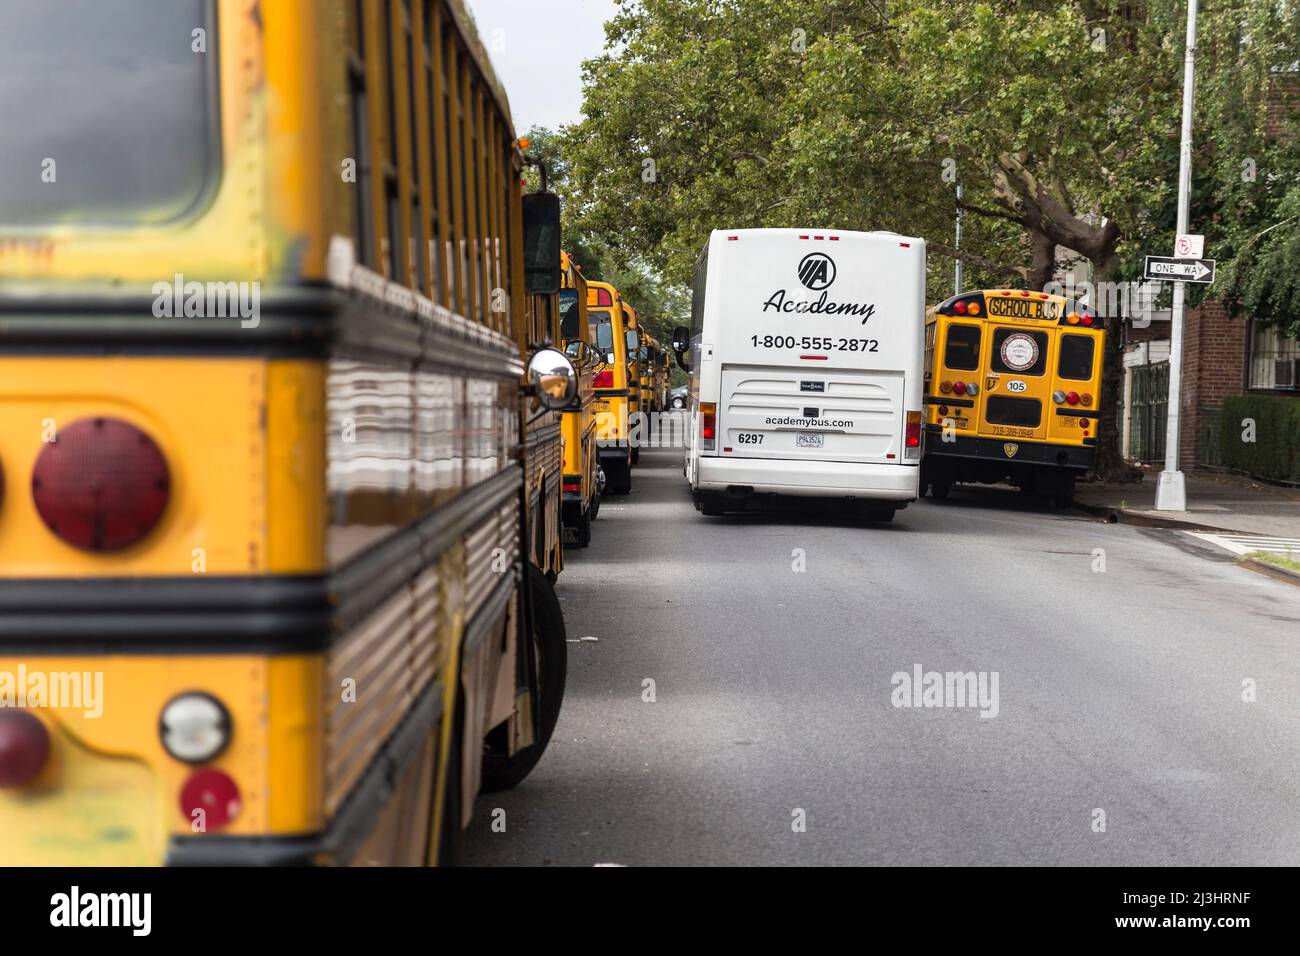 Wiliamsburg, New York City, NY, Etats-Unis, beaucoup de bus scolaires Banque D'Images